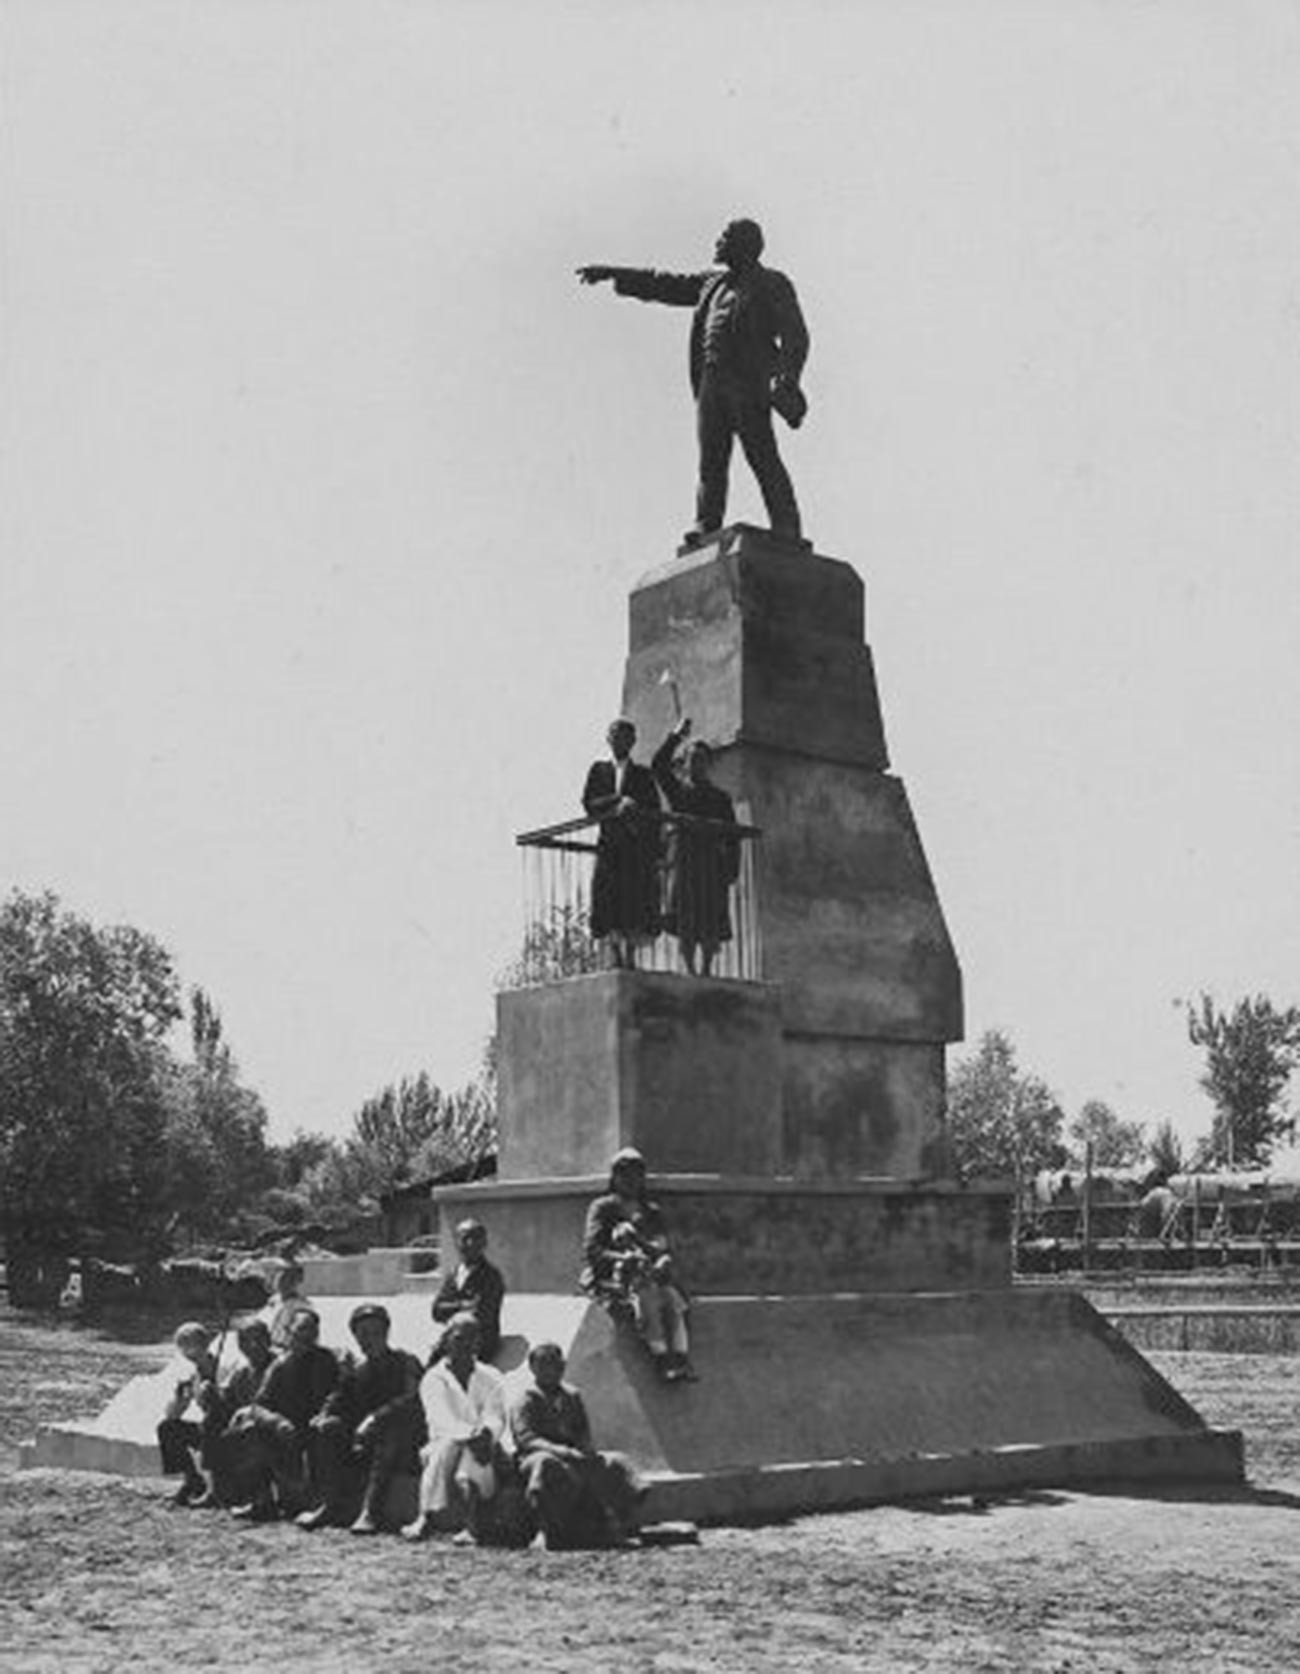 ウラジーミル・レーニン像。ウズベク・ソビエト社会主義共和国アンディジャン。1930年代